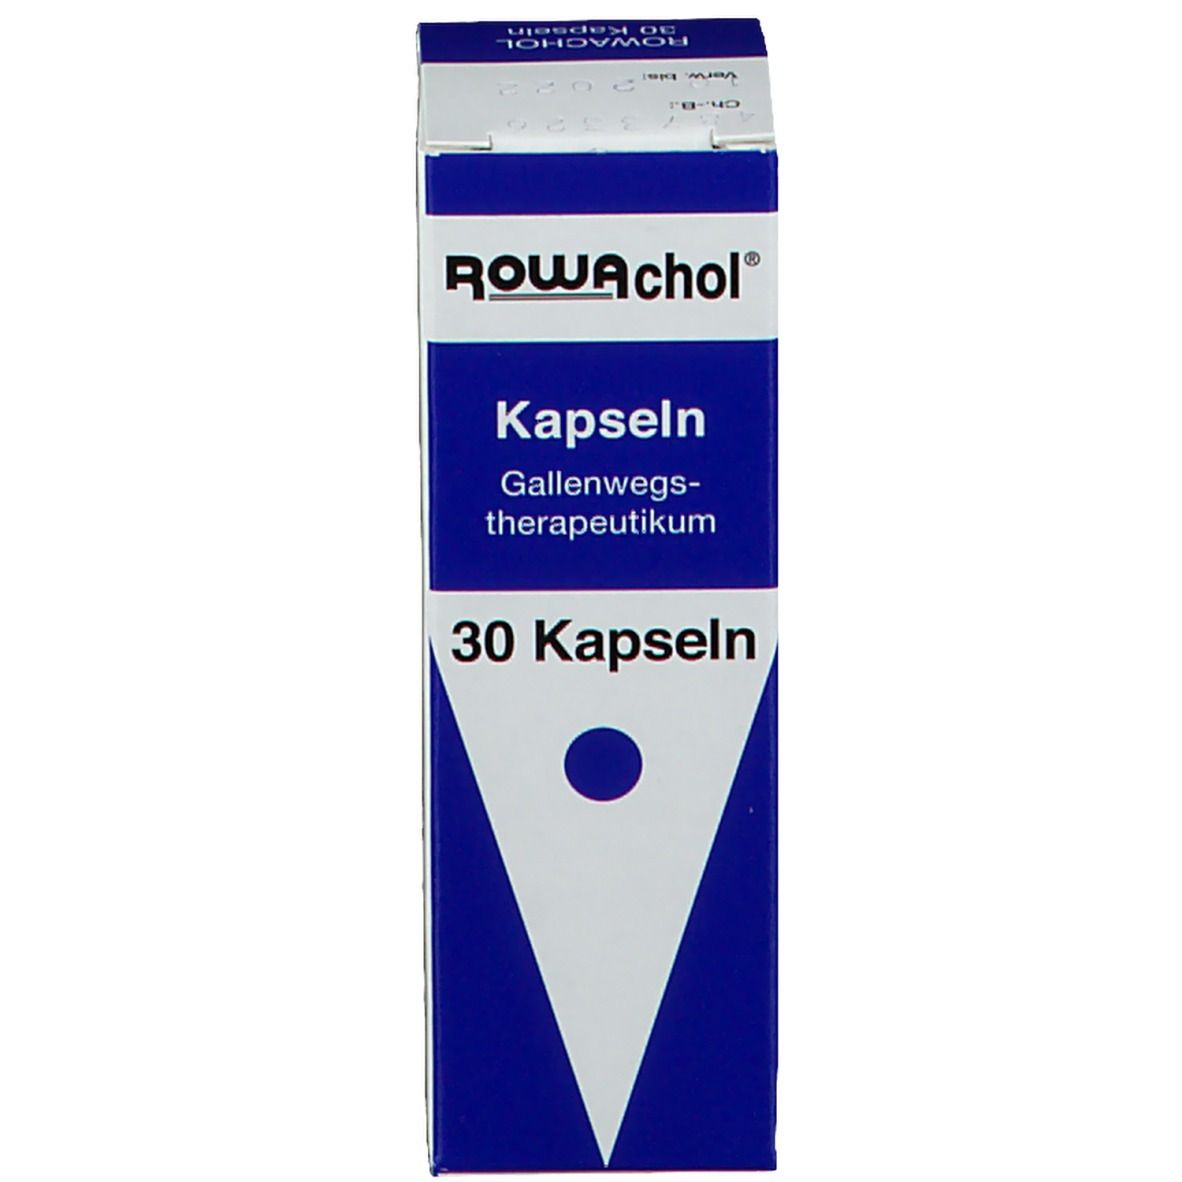 Rowachol® Kapseln